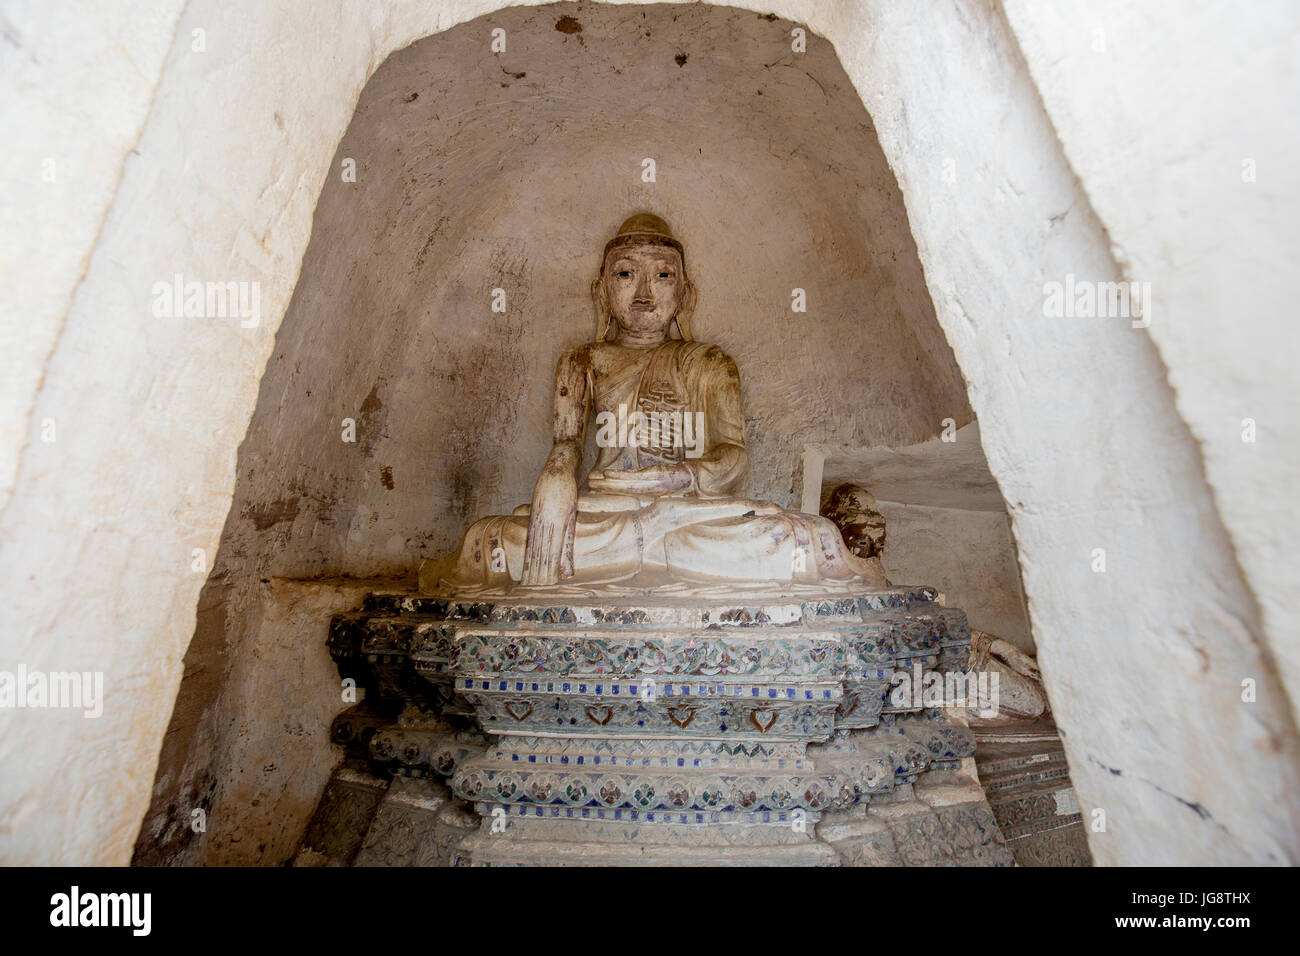 Hermosa estatua de Buda dentro de las cuevas de Po Win Daung en distrito de Monywa Sagaing Northen Región Myanmar / Birmania - Fotos de Viajes / cultura de Myanmar Foto de stock